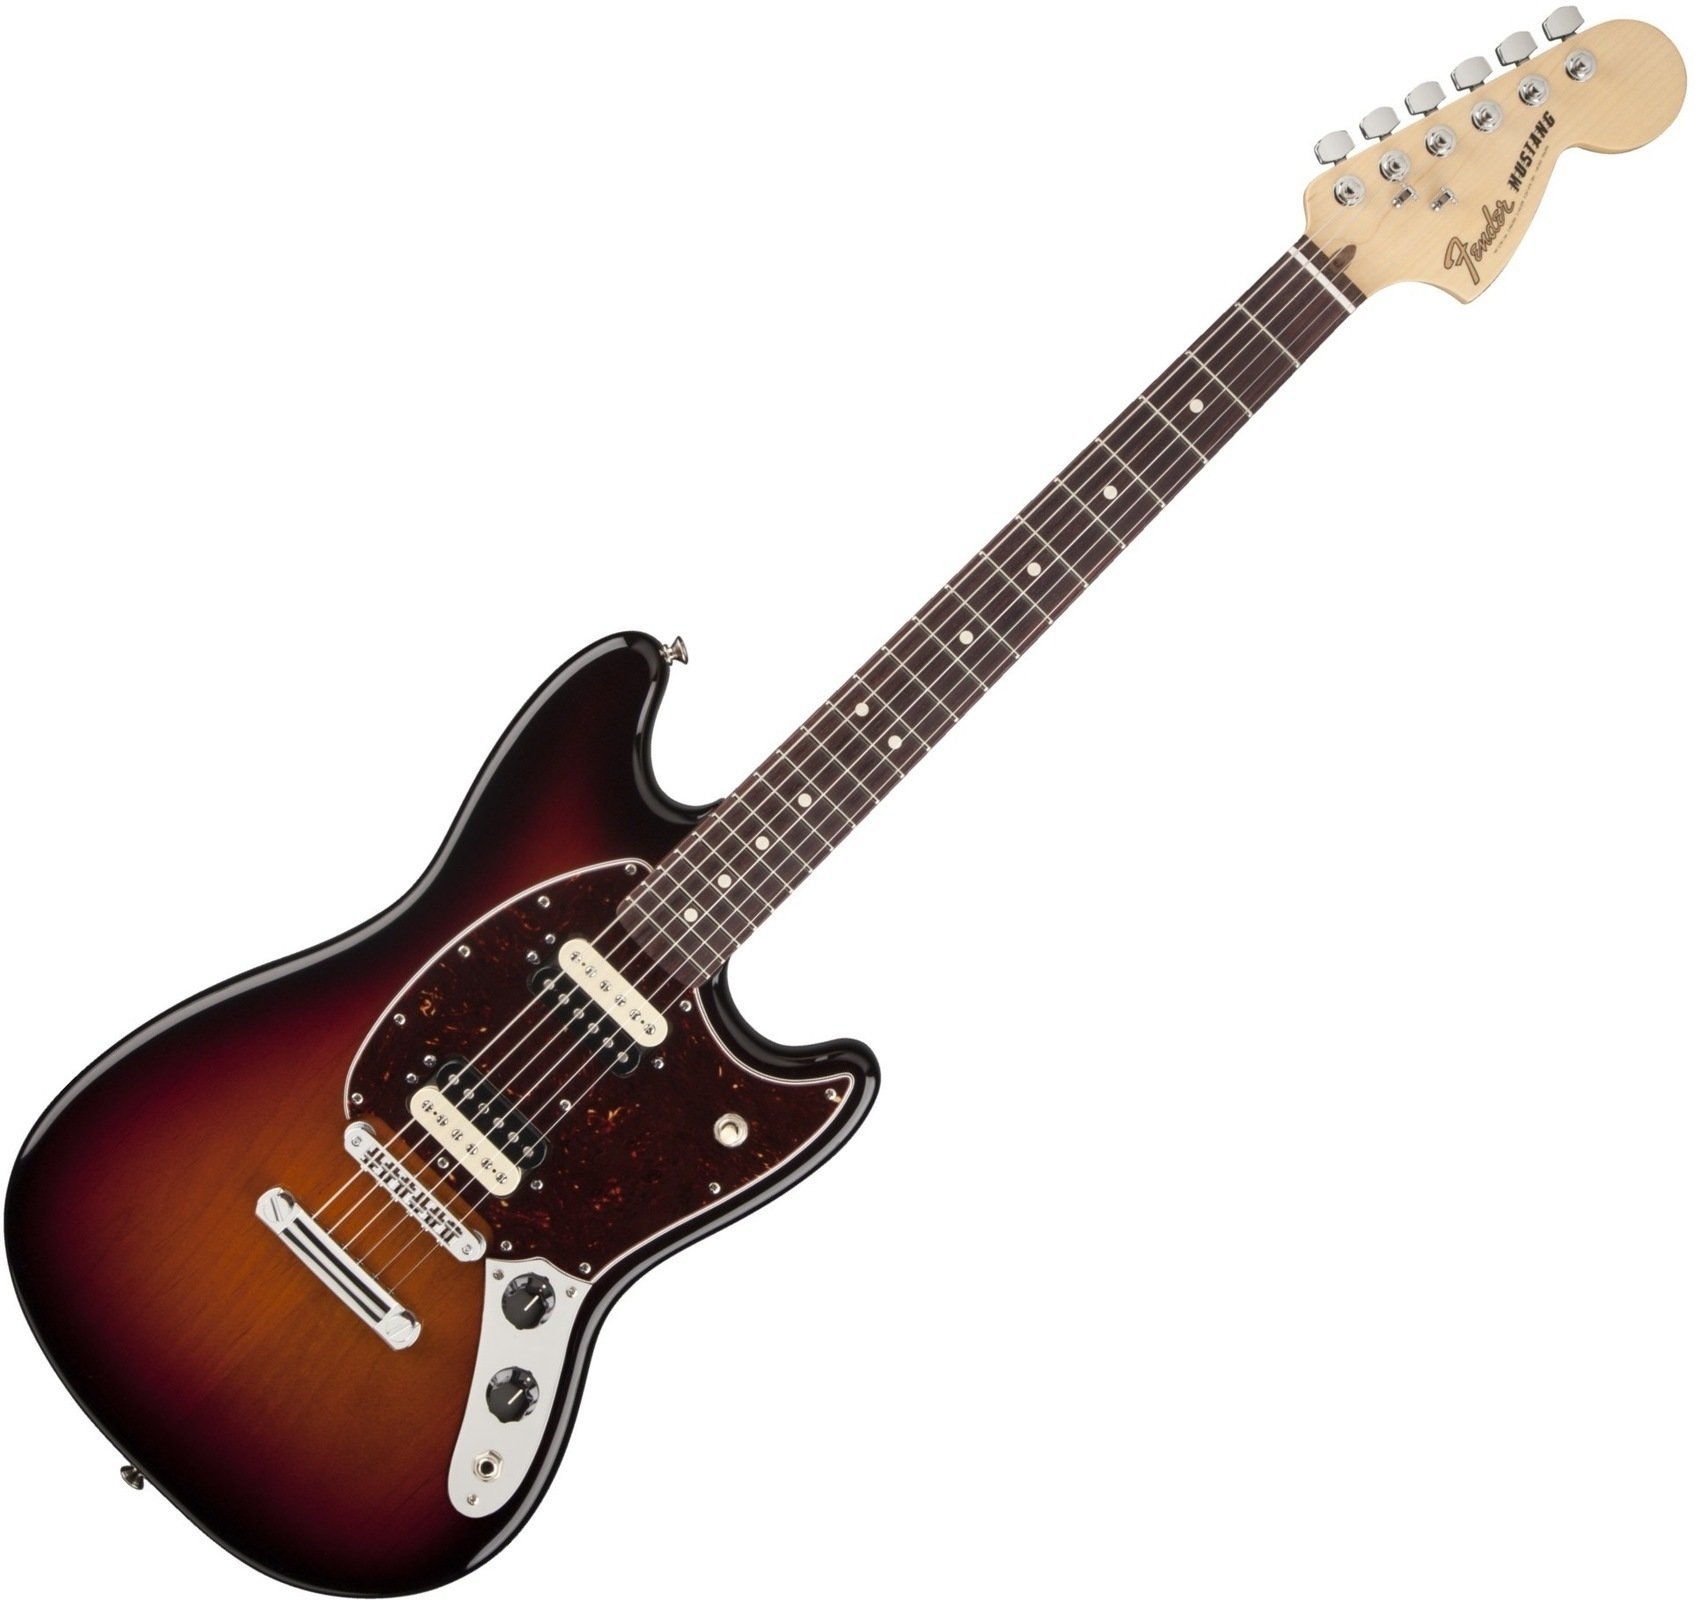 Sähkökitara Fender American Special Mustang, Rosewood Fingerboard, 3-Color Sunburst